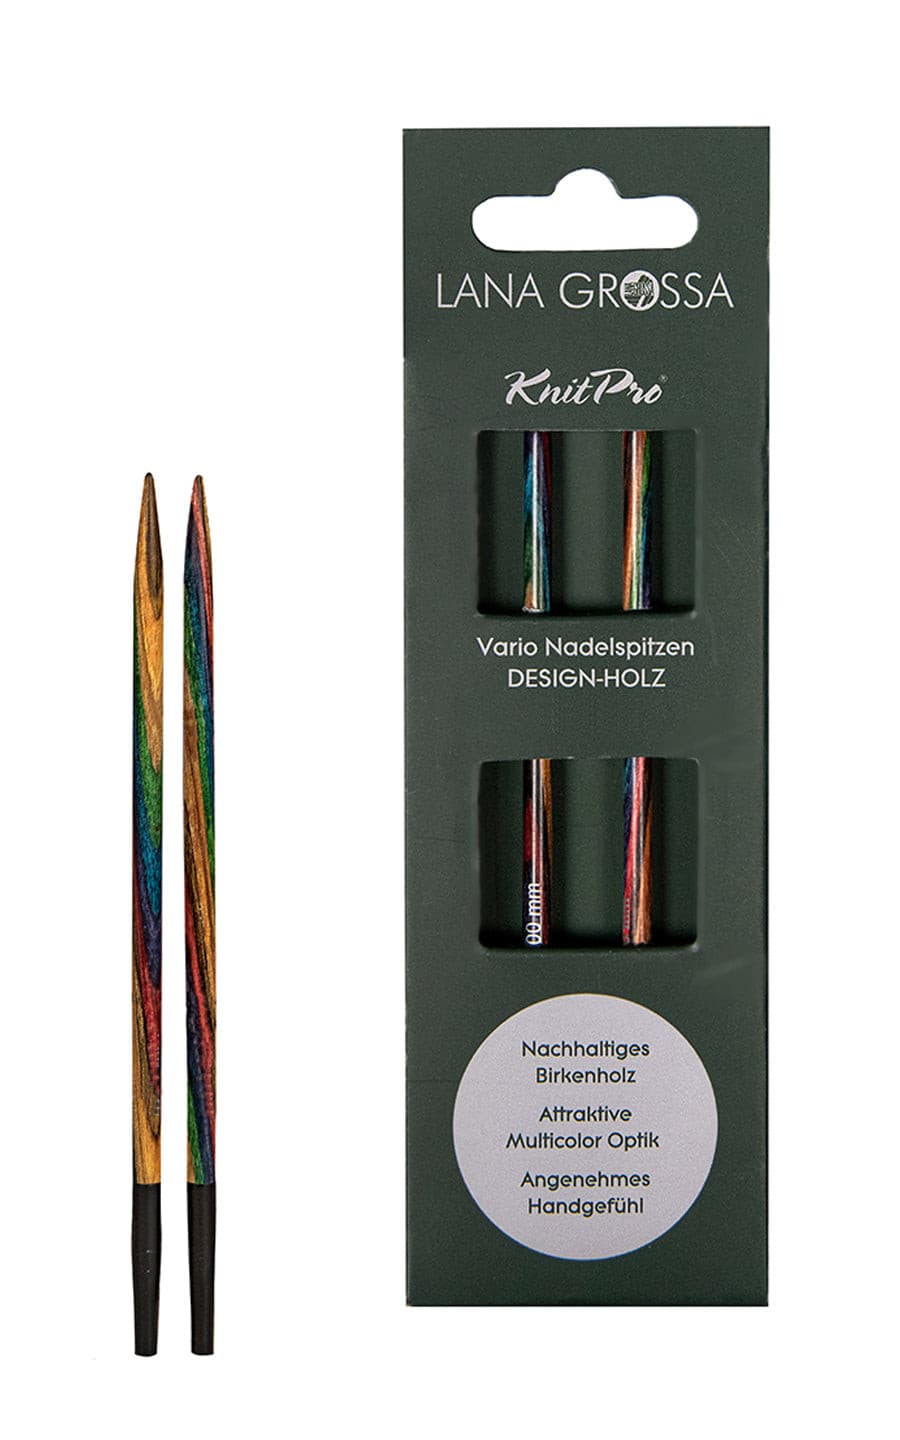 6,0 mm Nadelspitze Vario aus Holz - neue Verpackung von LANA GROSSA jetzt online kaufen bei OONIQUE